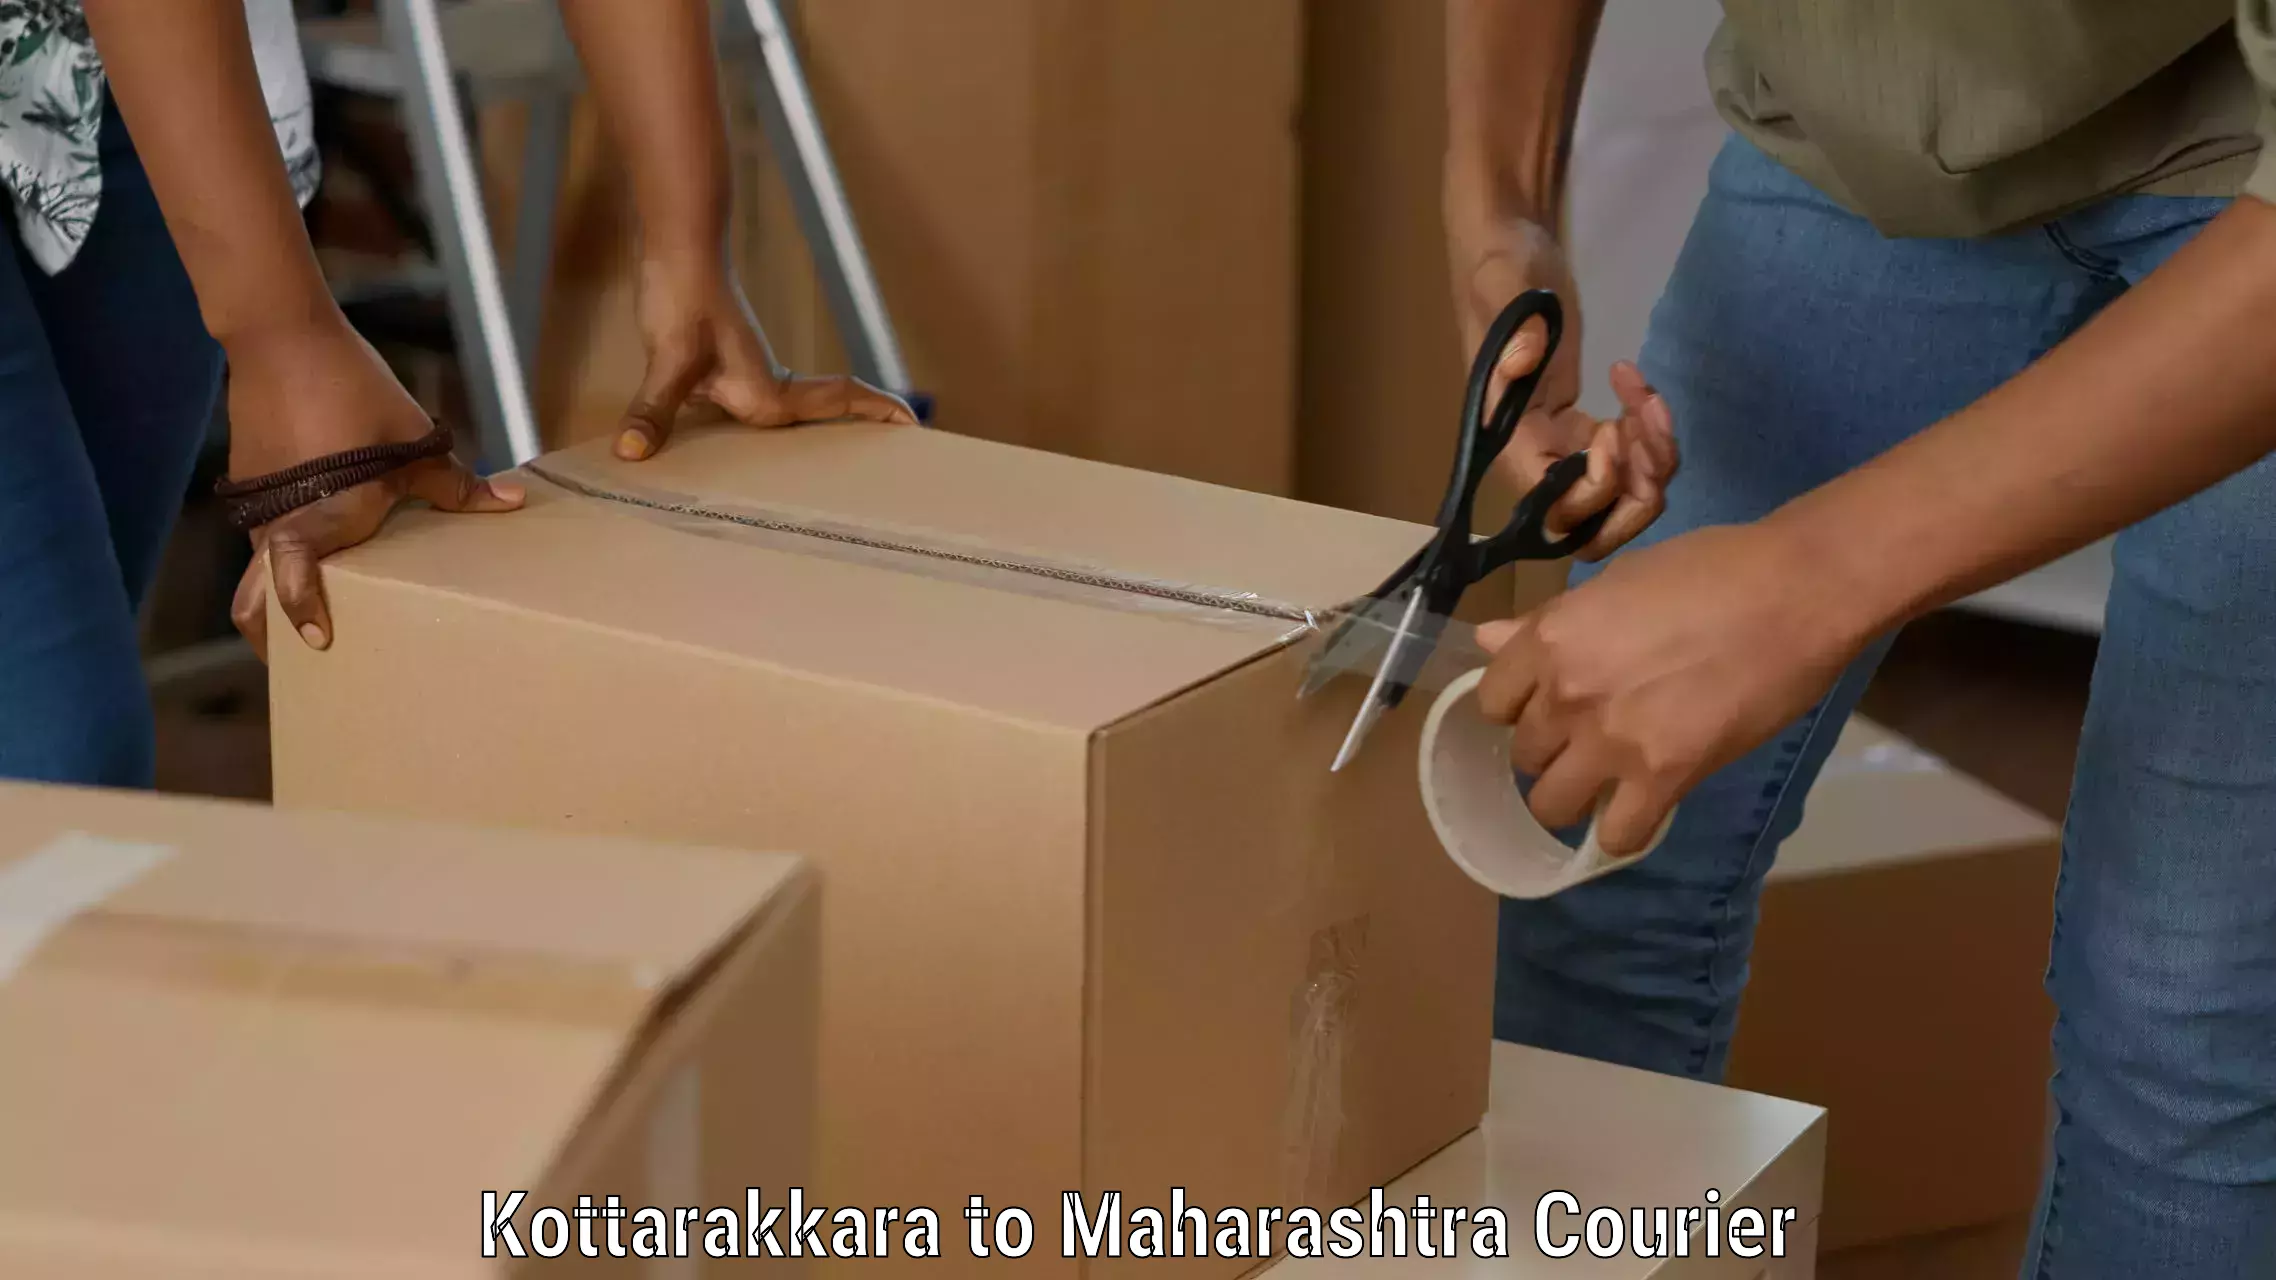 Courier app Kottarakkara to Kagal